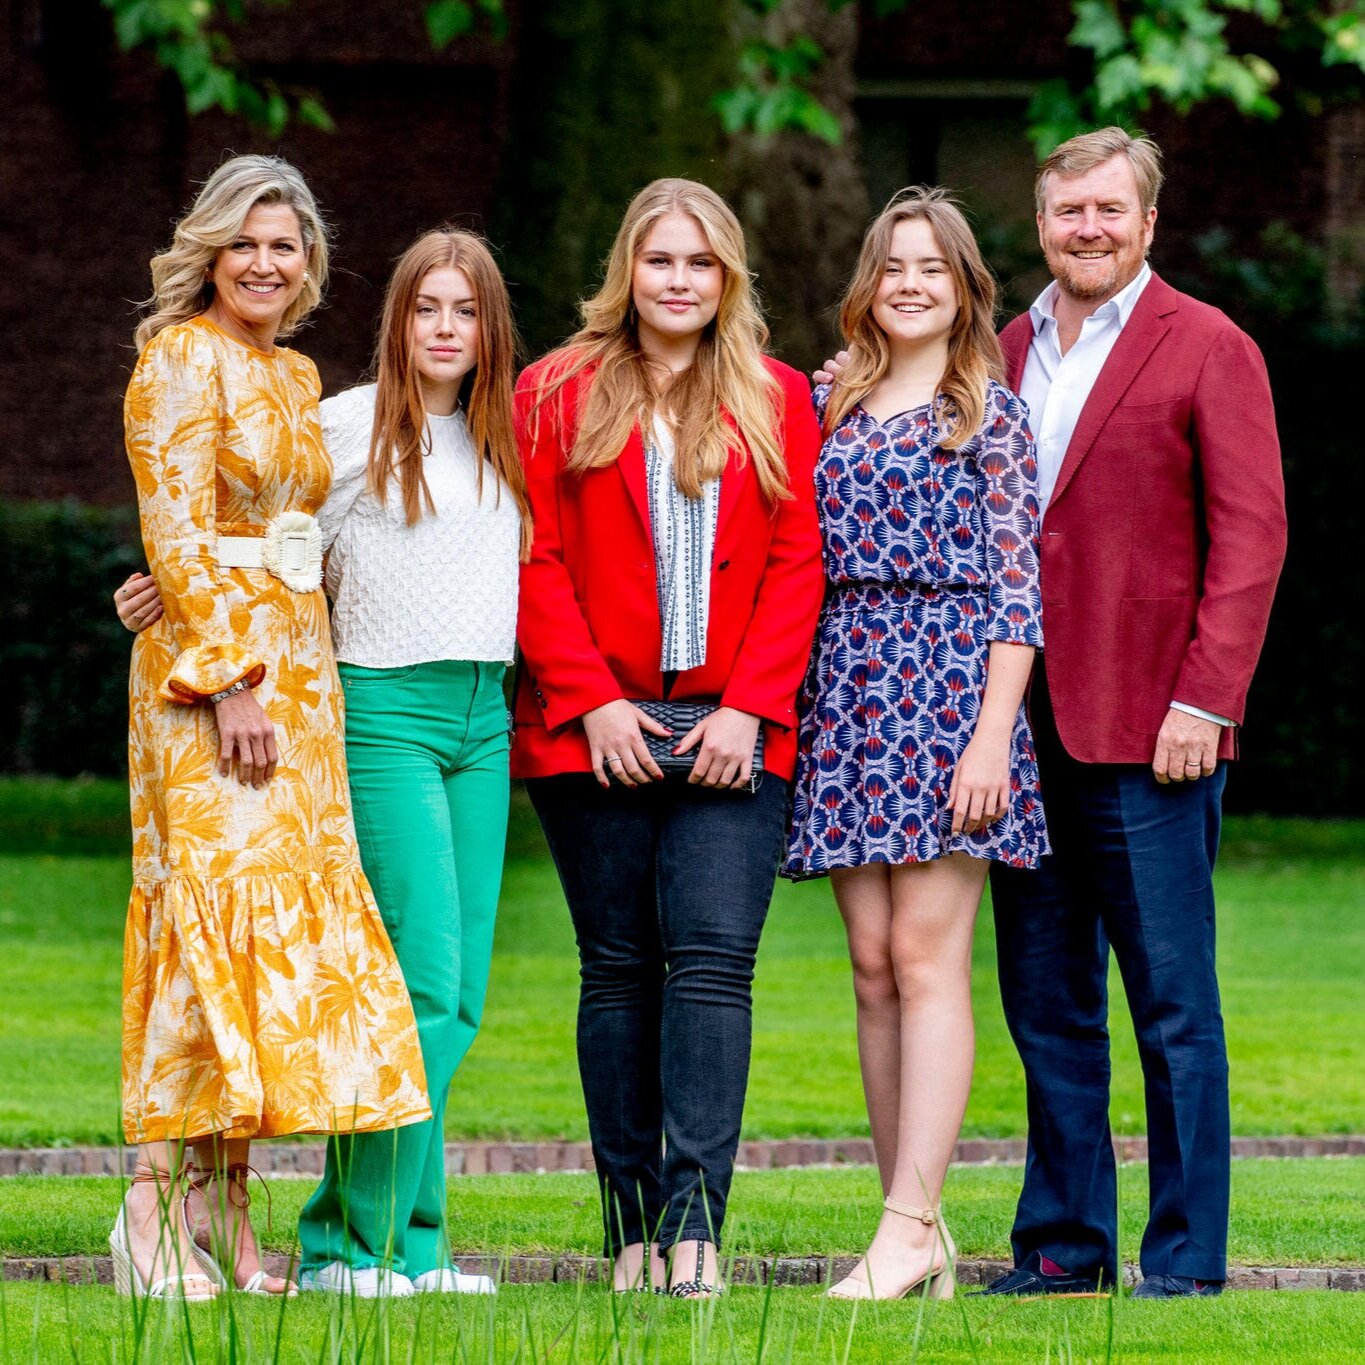 La familia real de los Países Bajos realiza la sesión fotográfica oficial de verano de 2021